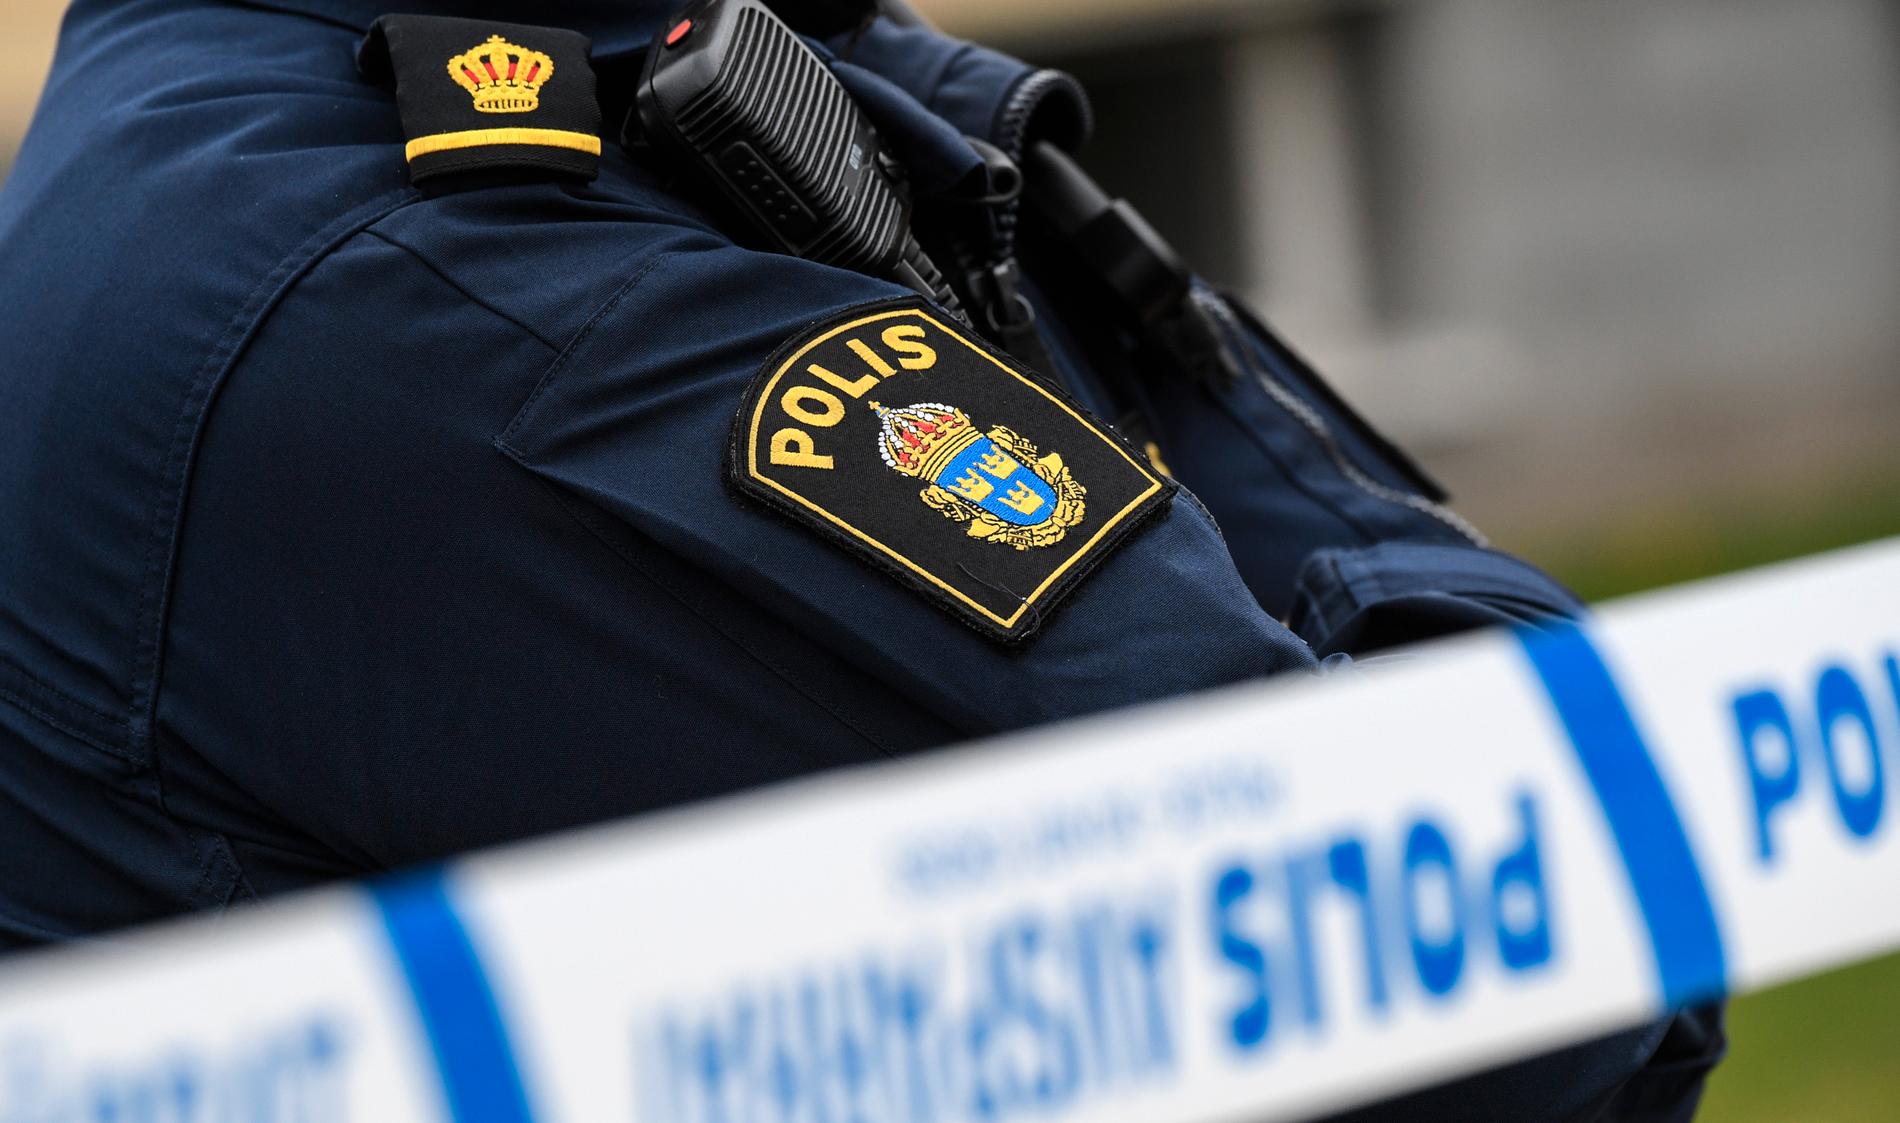 En kvinna har hittats död i ett hotellrum i Kalmar. Arkivbild.